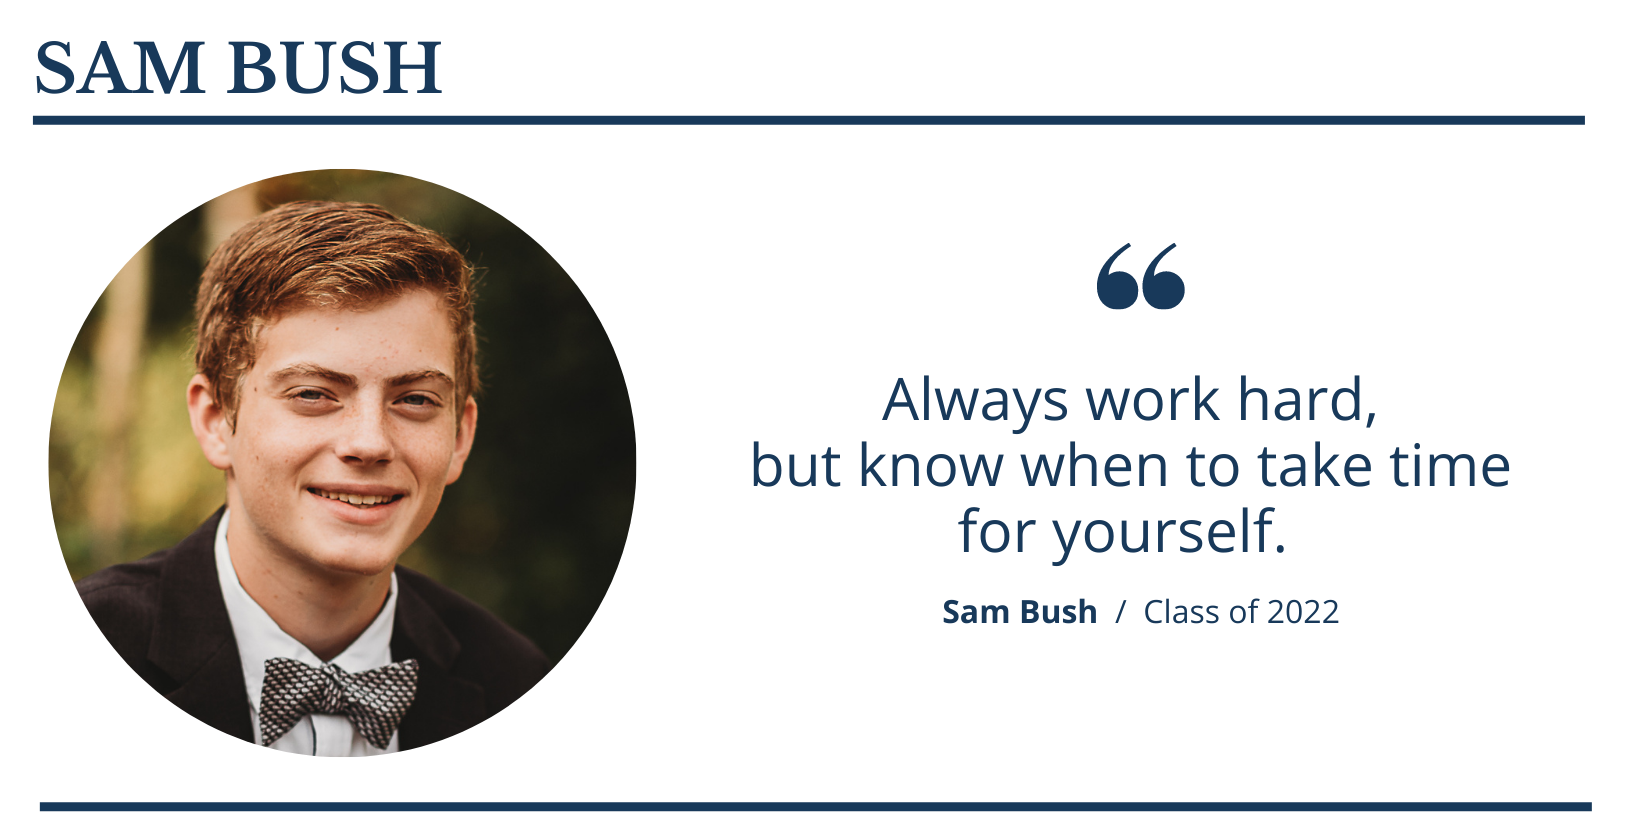 SAM BUSH  |  Faith Christian School Class of 2022